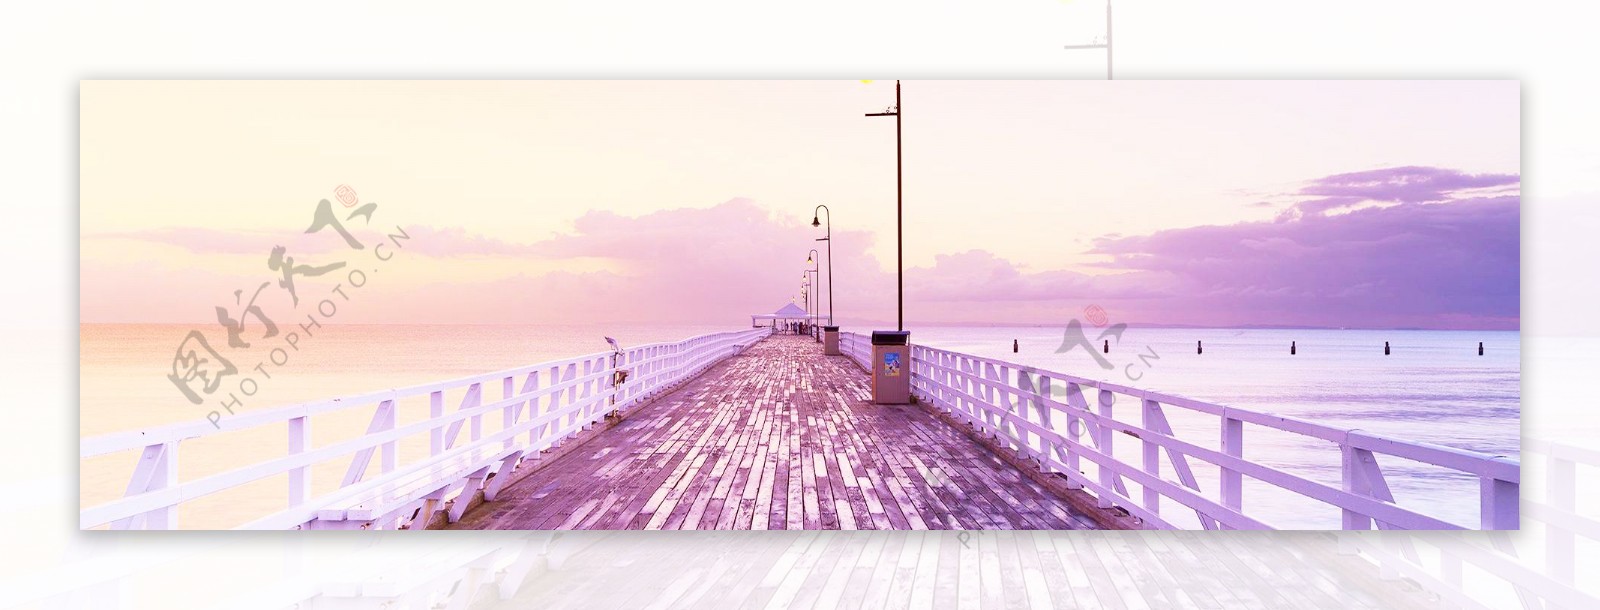 紫色大桥风景banner背景